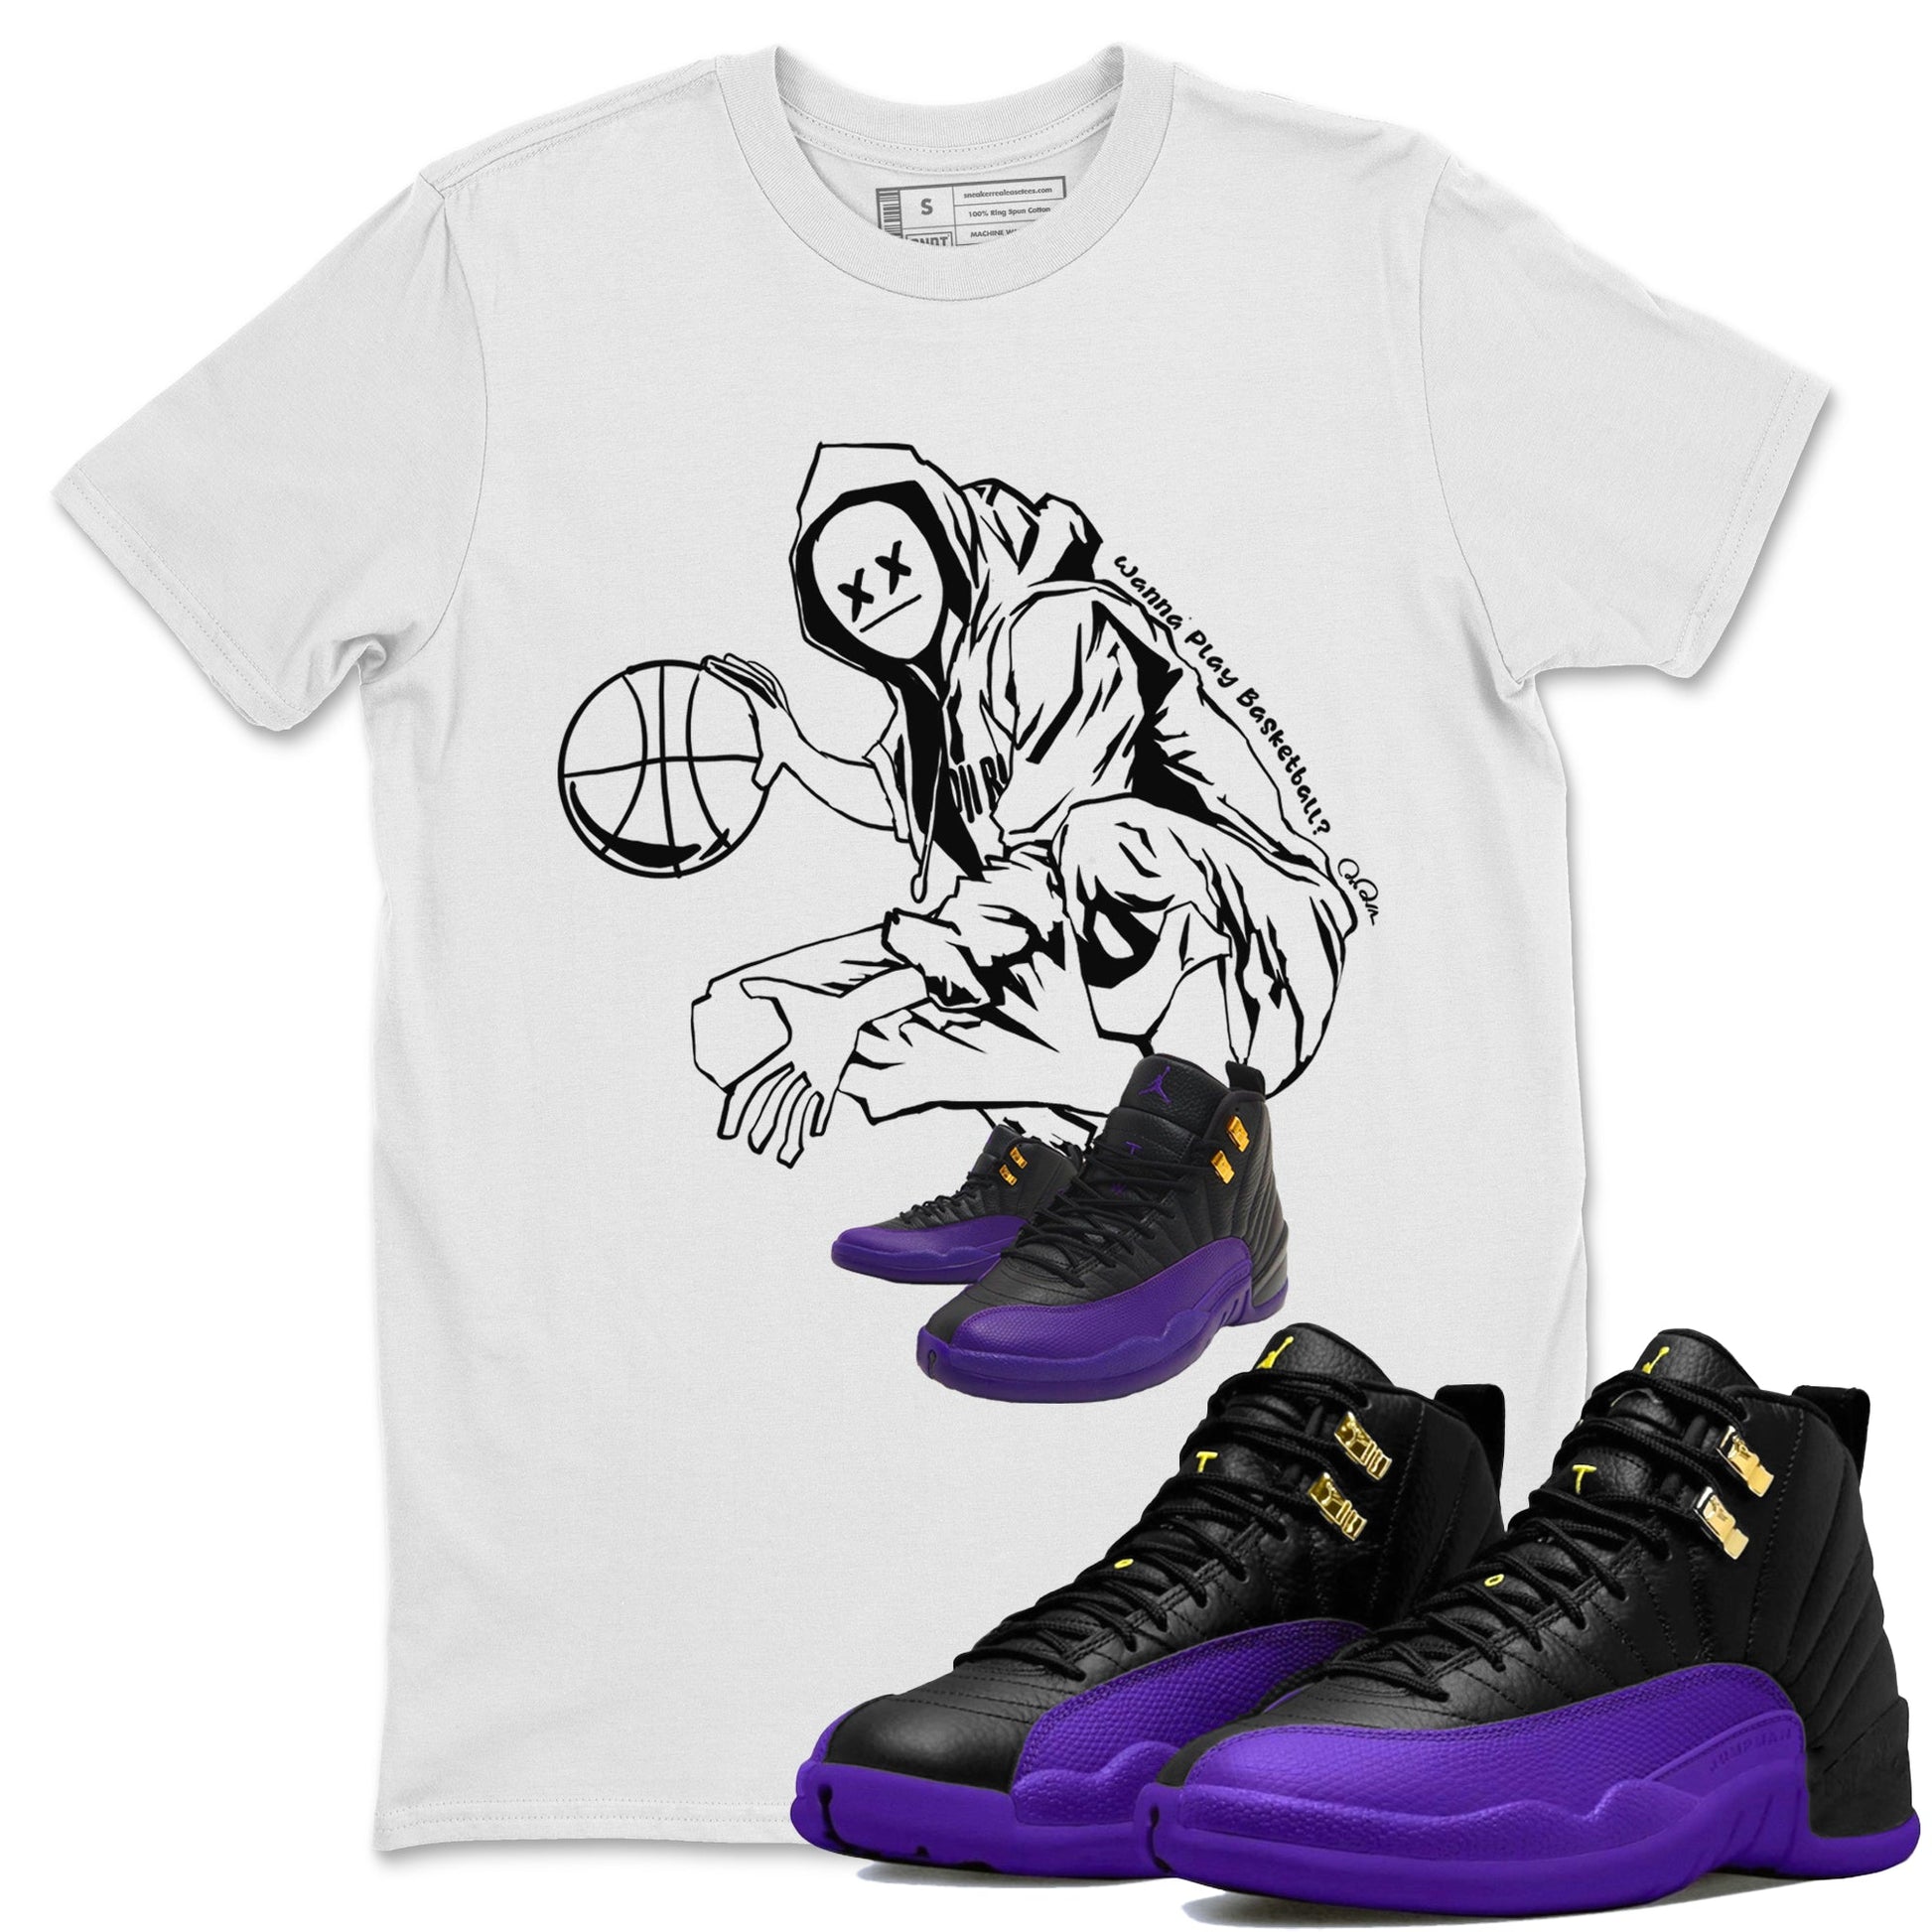 Air Jordan 12 Field Purple shirt to match jordans Wanna Play Basketball Streetwear Sneaker Shirt AJ12 Field Purple Drip Gear Zone Sneaker Matching Clothing Unisex White 1 T-Shirt